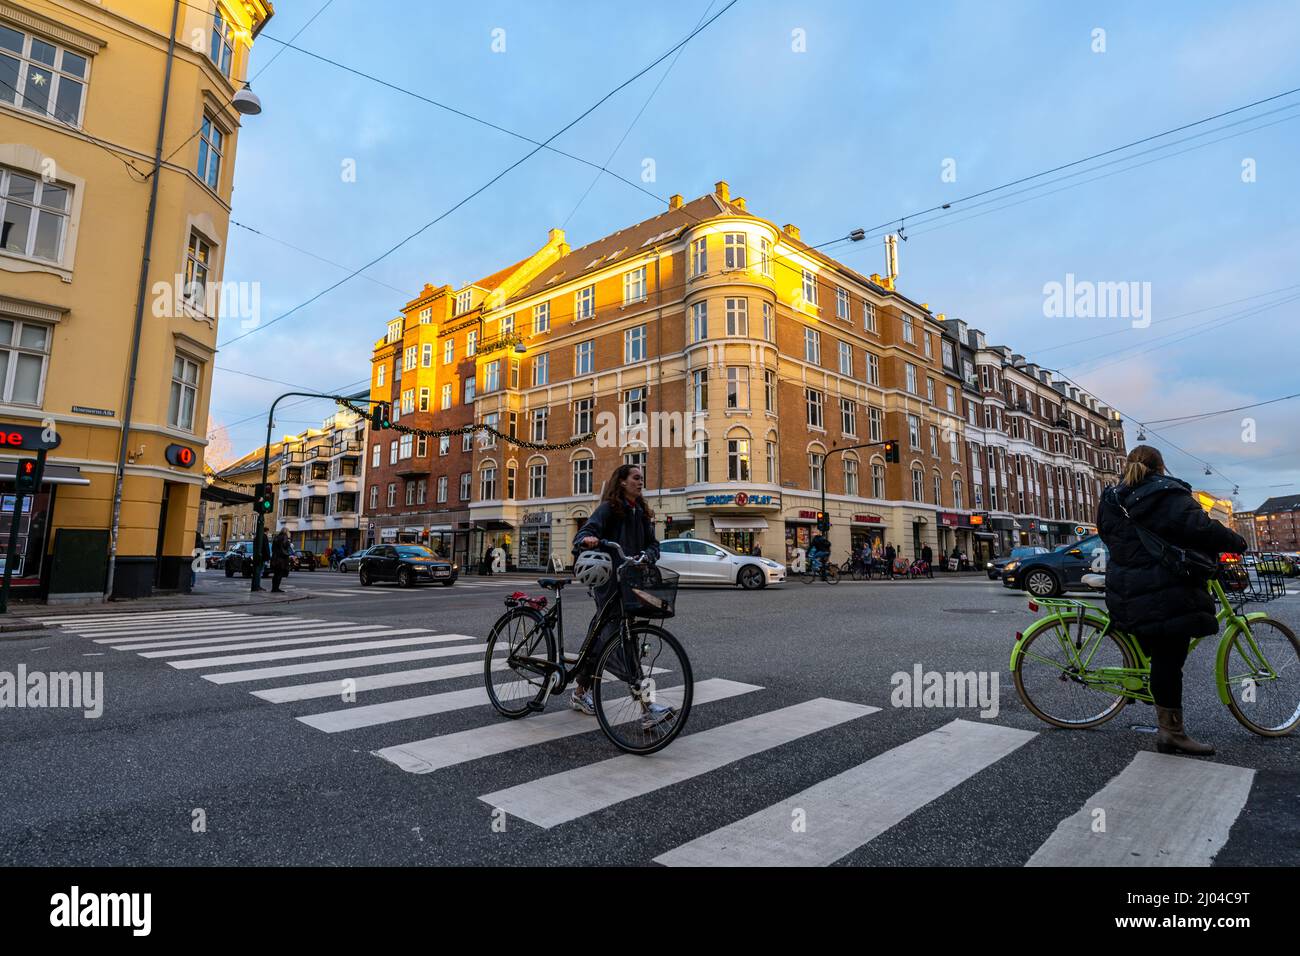 Automobili, edifici e persone con biciclette sul crosswalk a Copenhagen, Danimarca Foto Stock